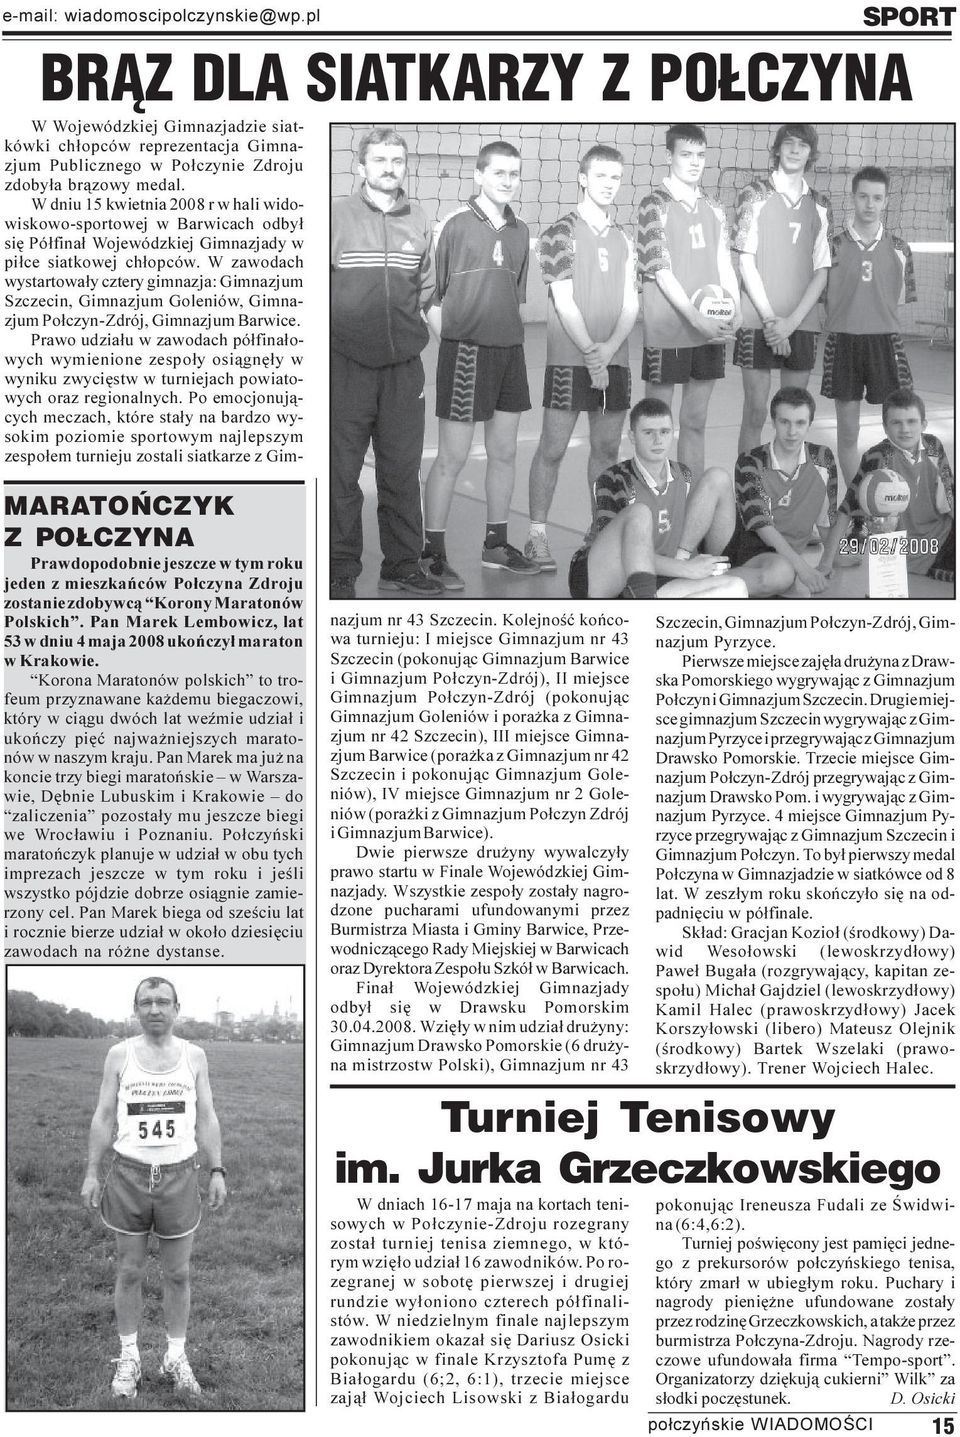 Pan Marek Lembowicz, lat 53 w dniu 4 maja 2008 ukoñczy³ maraton w Krakowie.